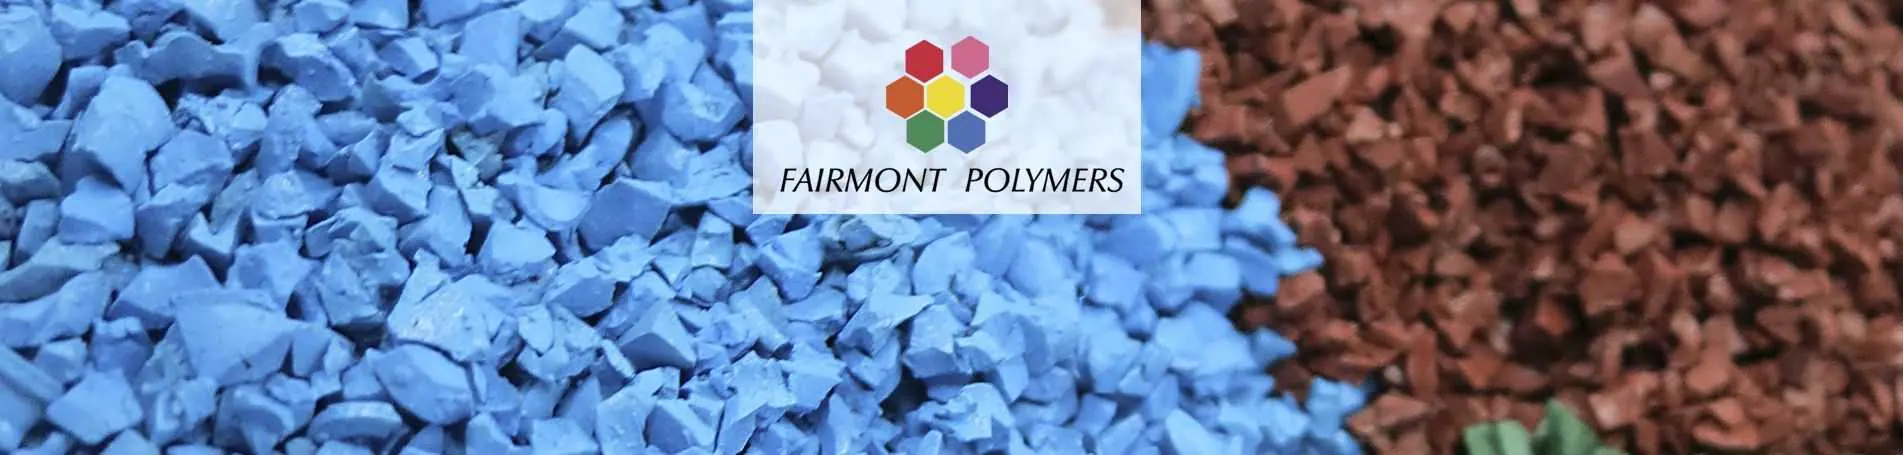 Fairmont Polymers confía el desarrollo de su nueva web a Lifting Group